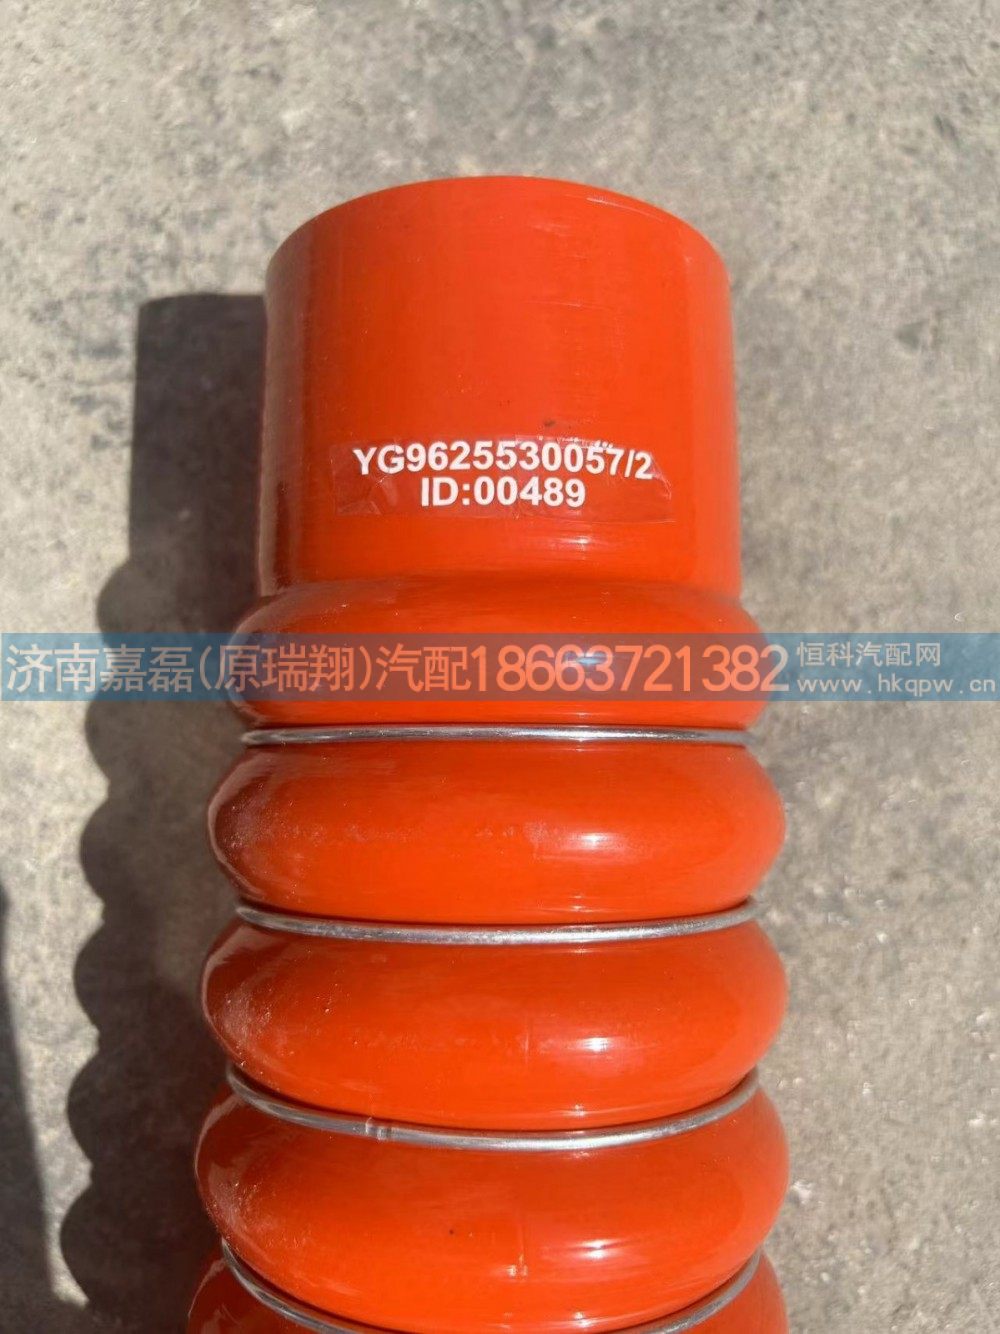 YG9625530057,中冷器进气胶管,济南嘉磊汽车配件有限公司(原济南瑞翔)